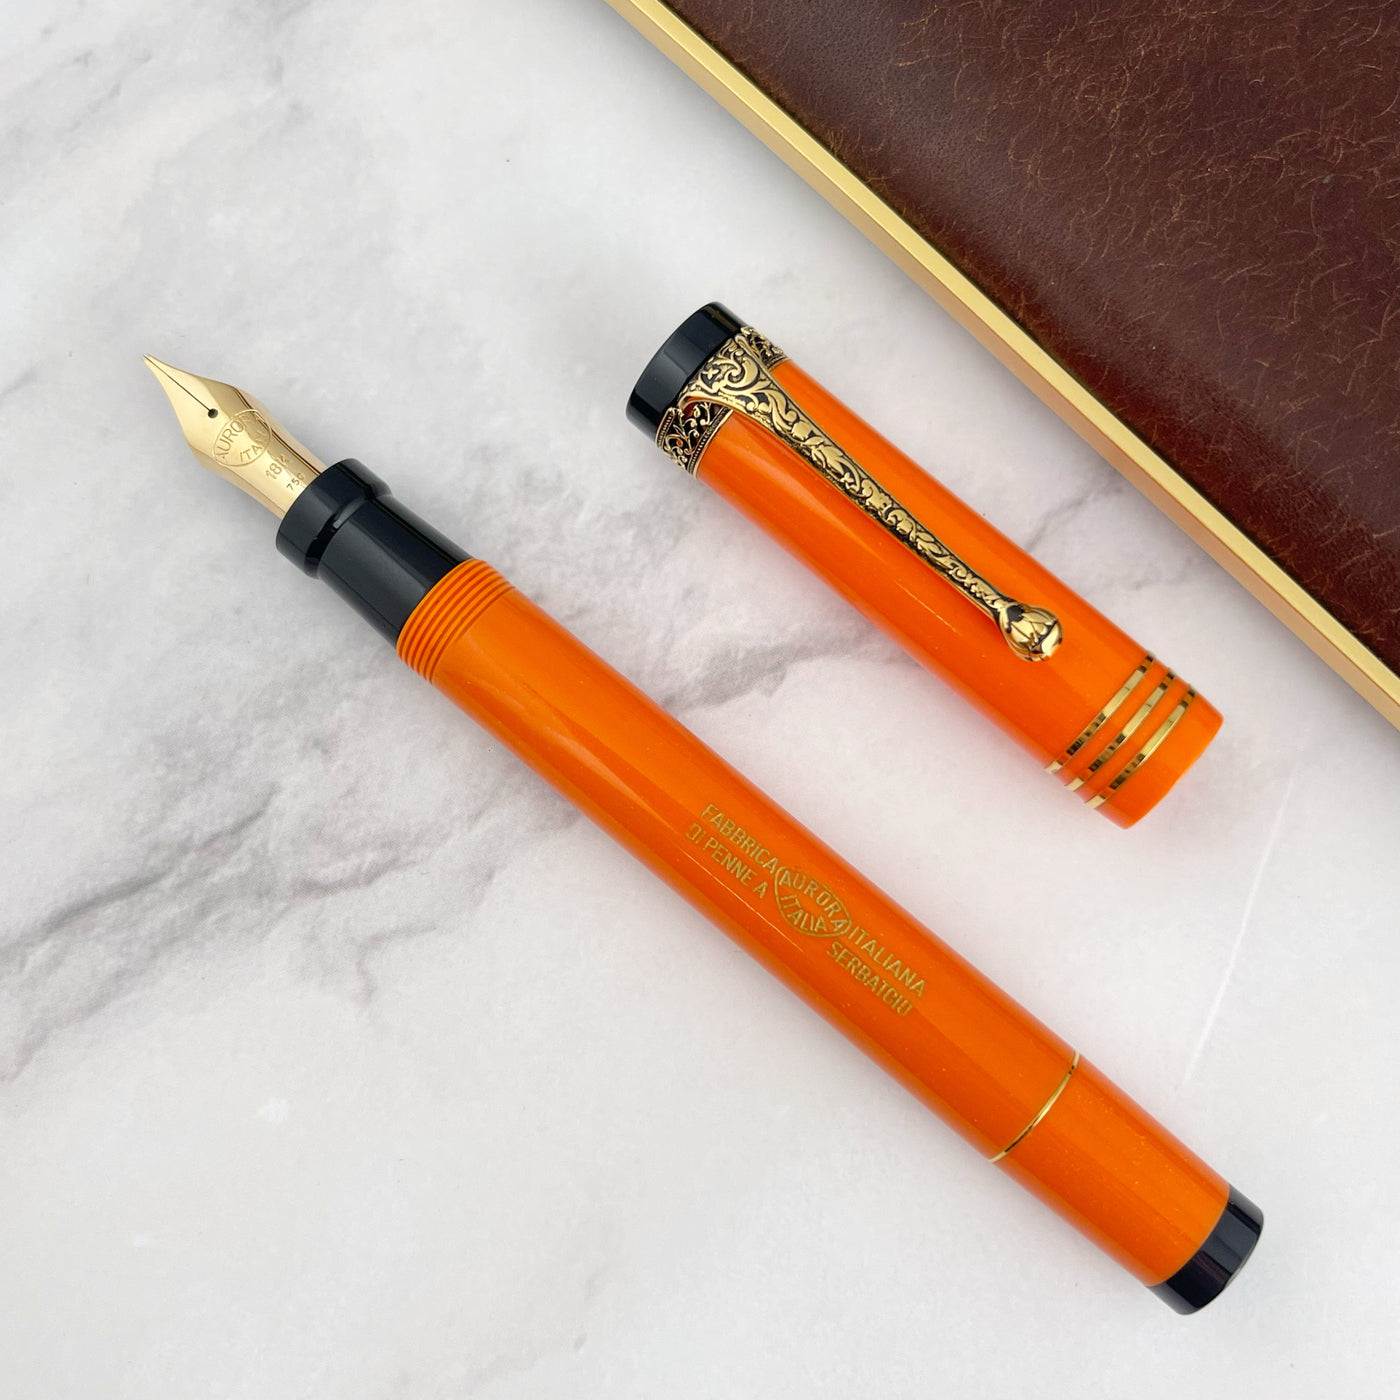 Aurora Internazionale Fountain Pen - Orange (Limited Edition)